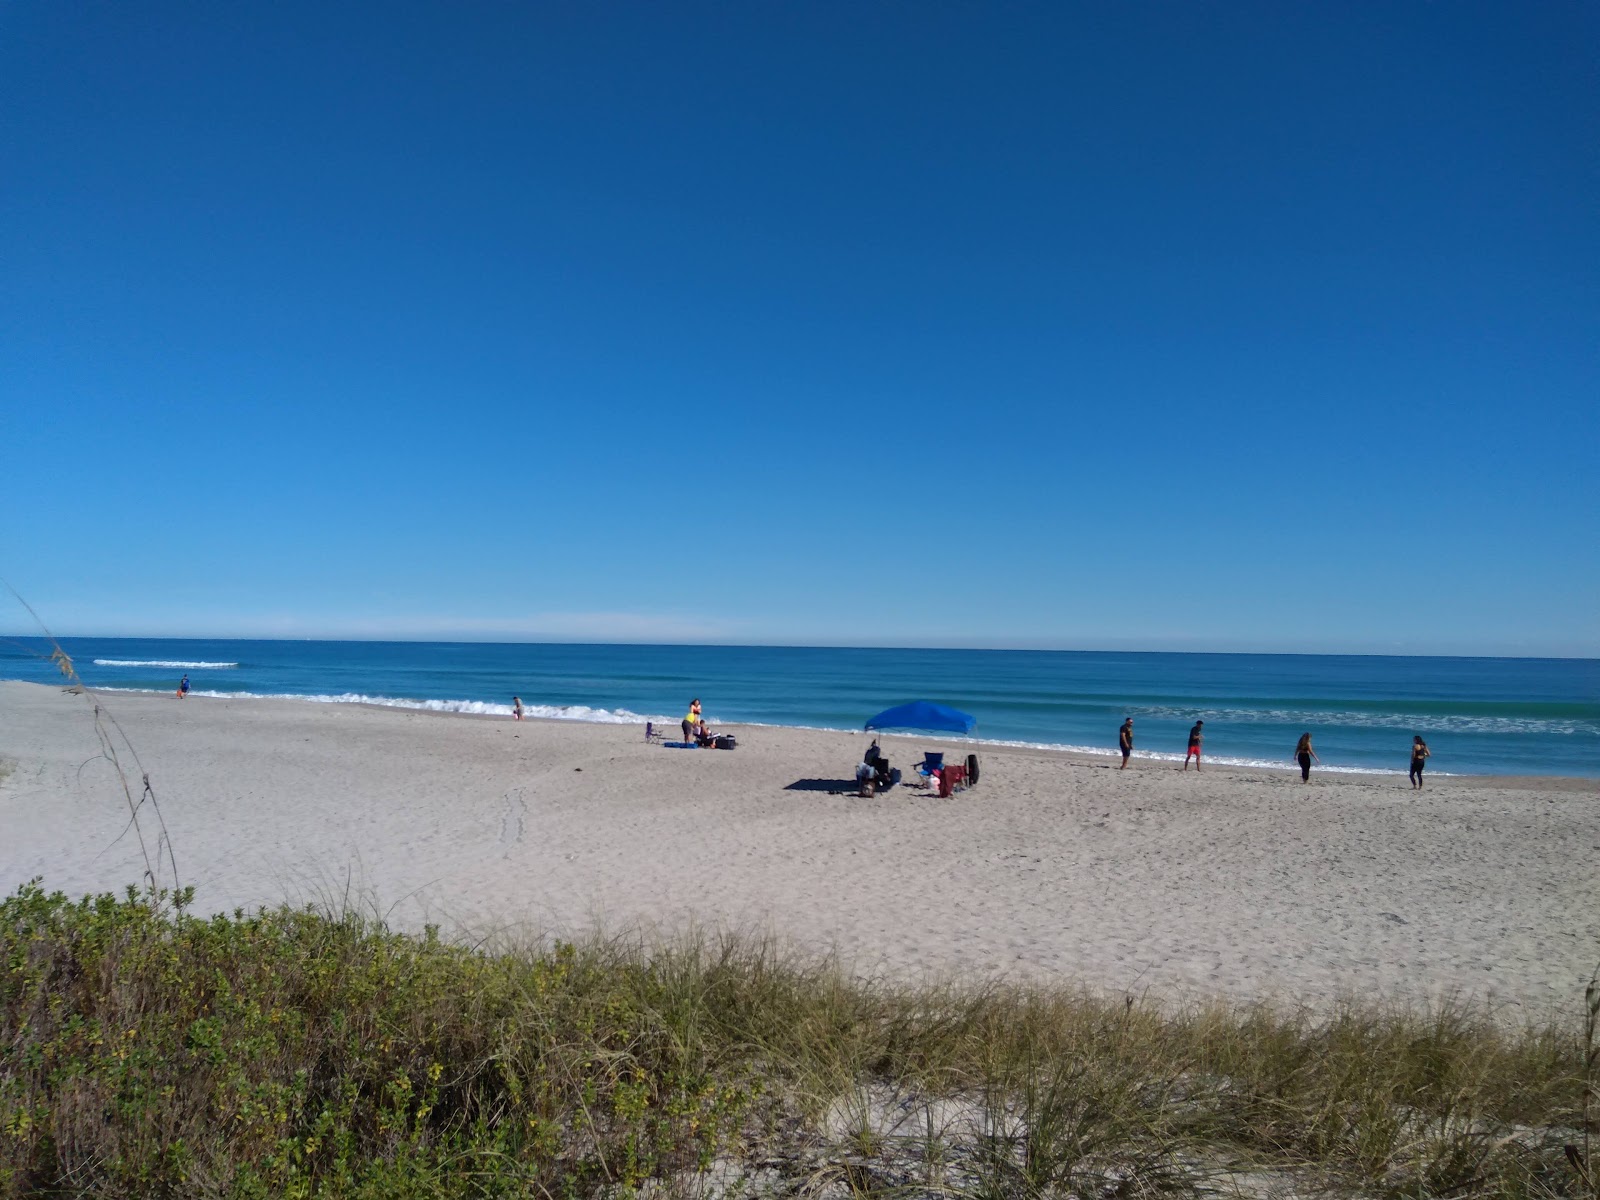 Fotografie cu Ocean Ave beach cu o suprafață de nisip strălucitor